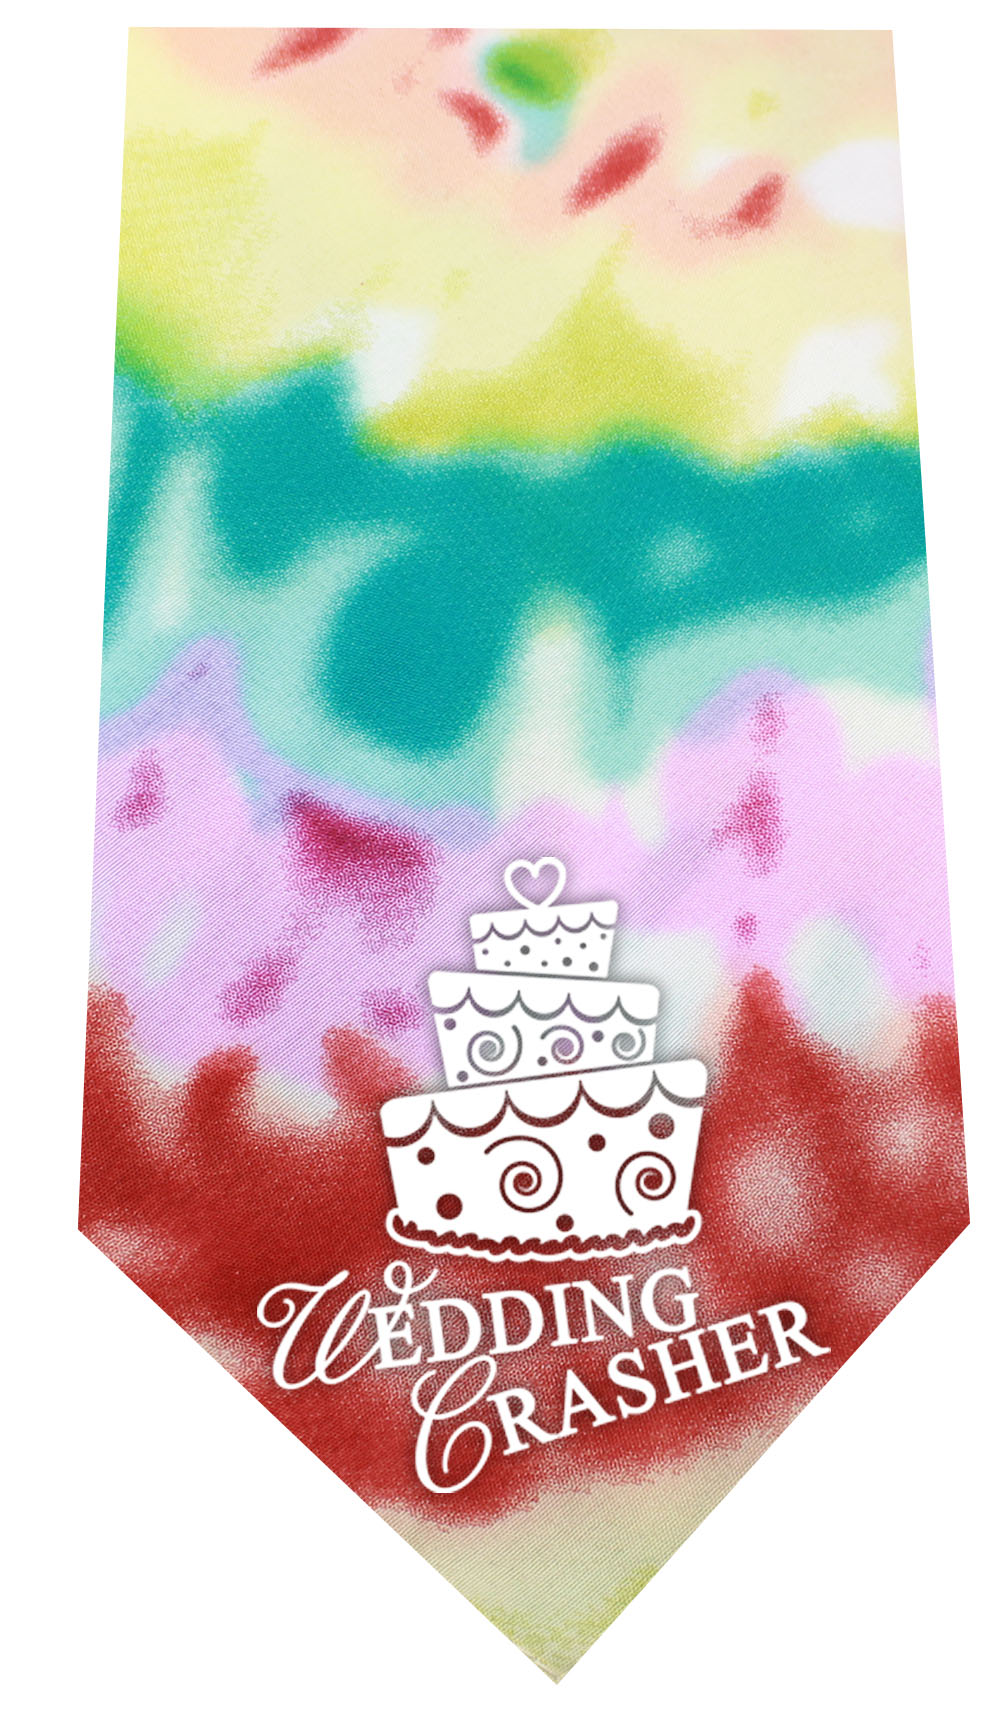 Wedding Crasher Screen Print Bandana Tie Dye